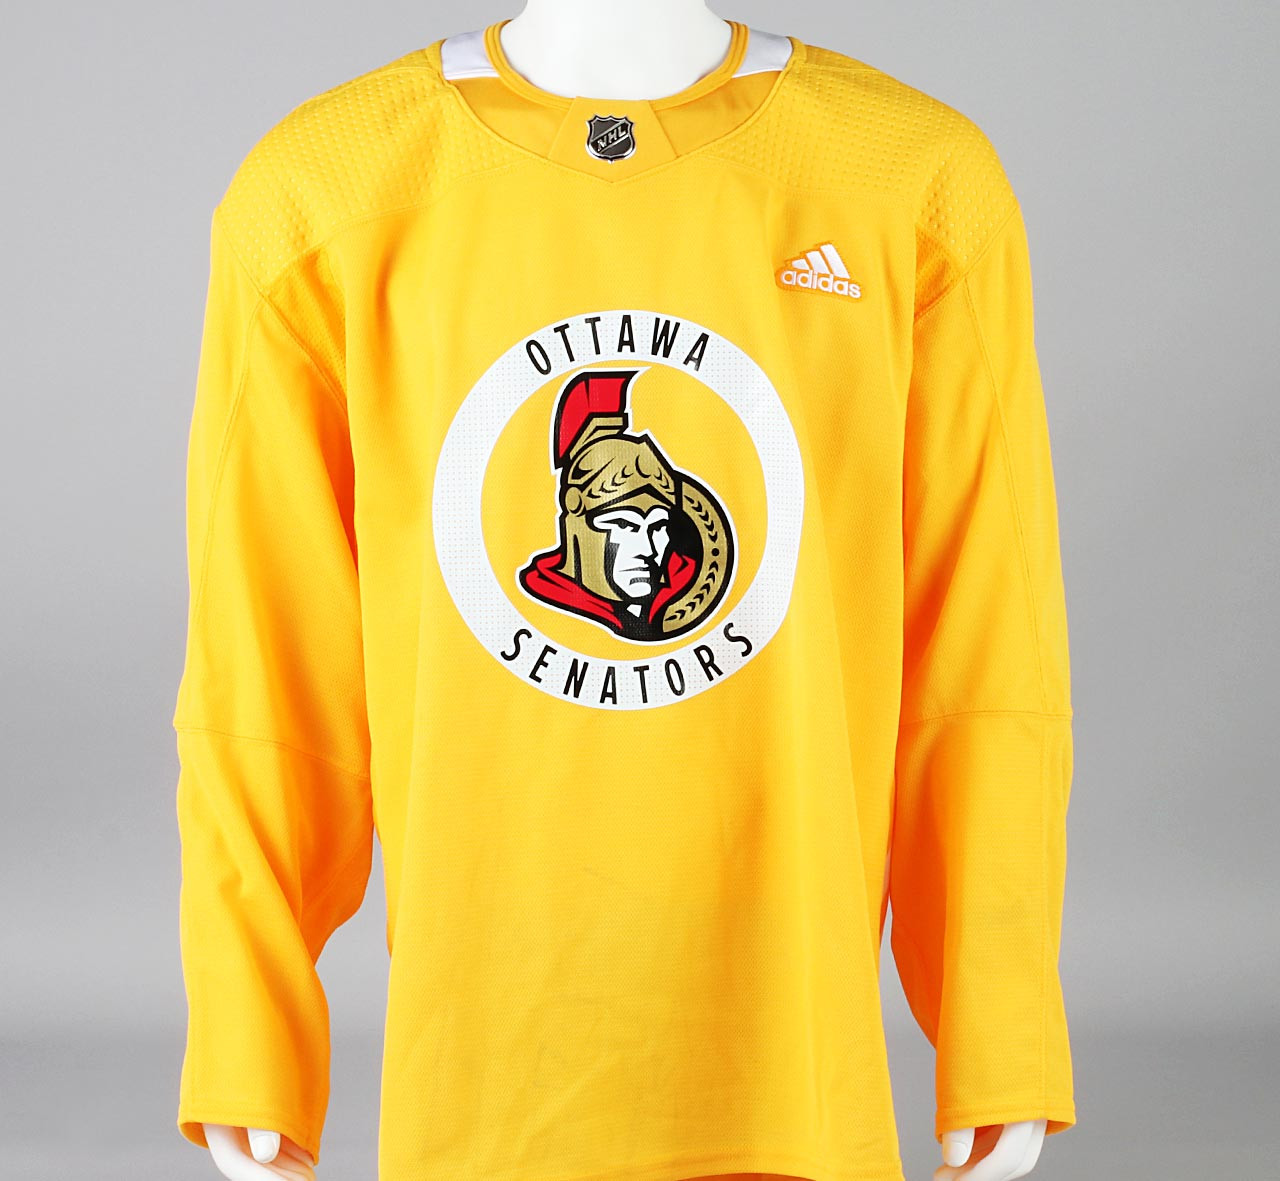 Practice Jersey - Ottawa Senators - Yellow Adidas Size 58 - Pro Stock Hockey